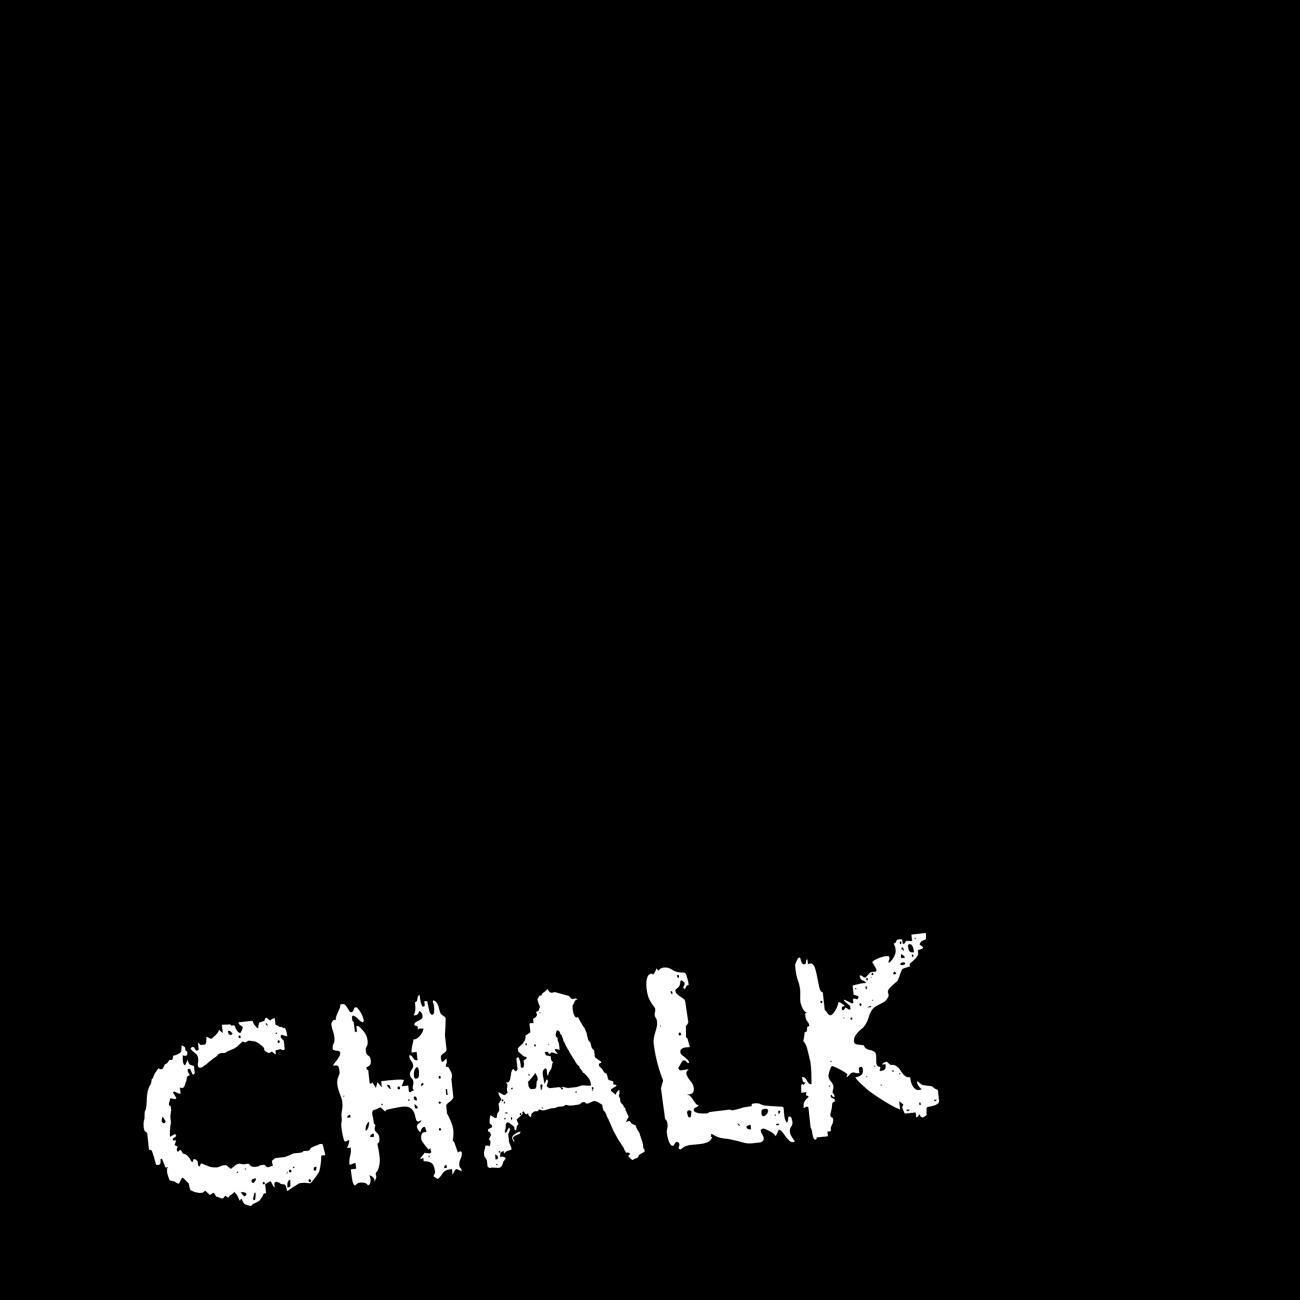 CHALKBOARD PEEL & STICK WALLPAPER